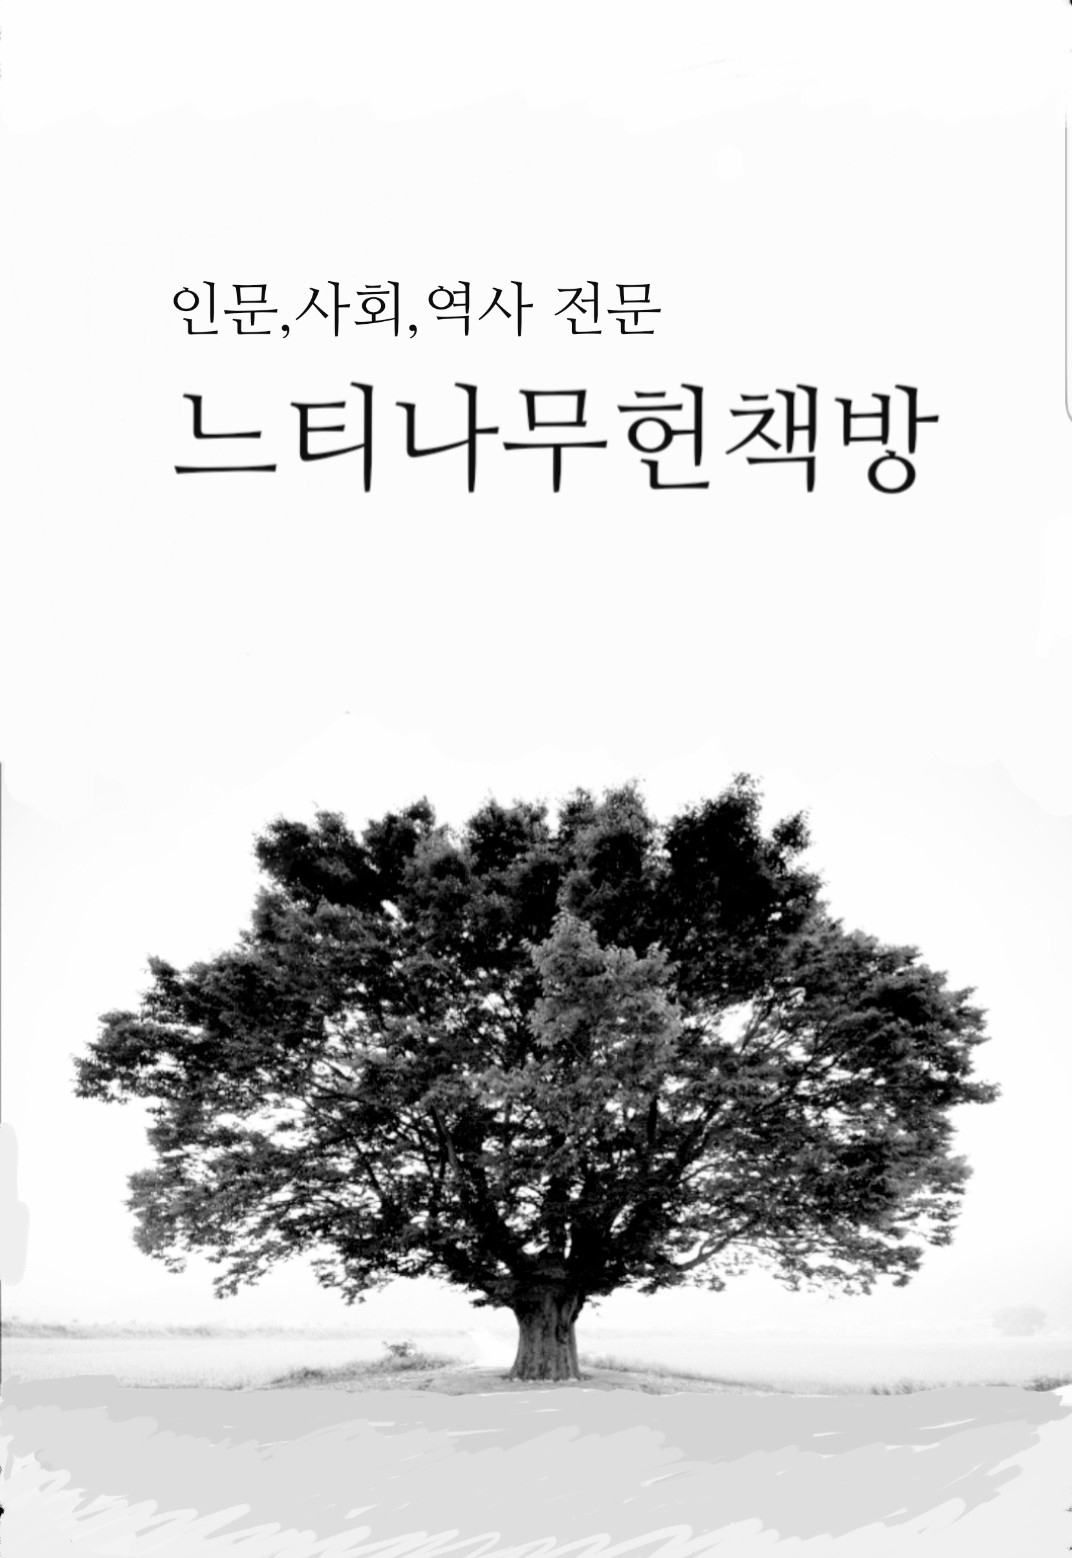 한국의 명문(銘文) - 연세대학교 창힙 100주년 기념 한국대학박물관협회 연합전시회 (알가3코너)